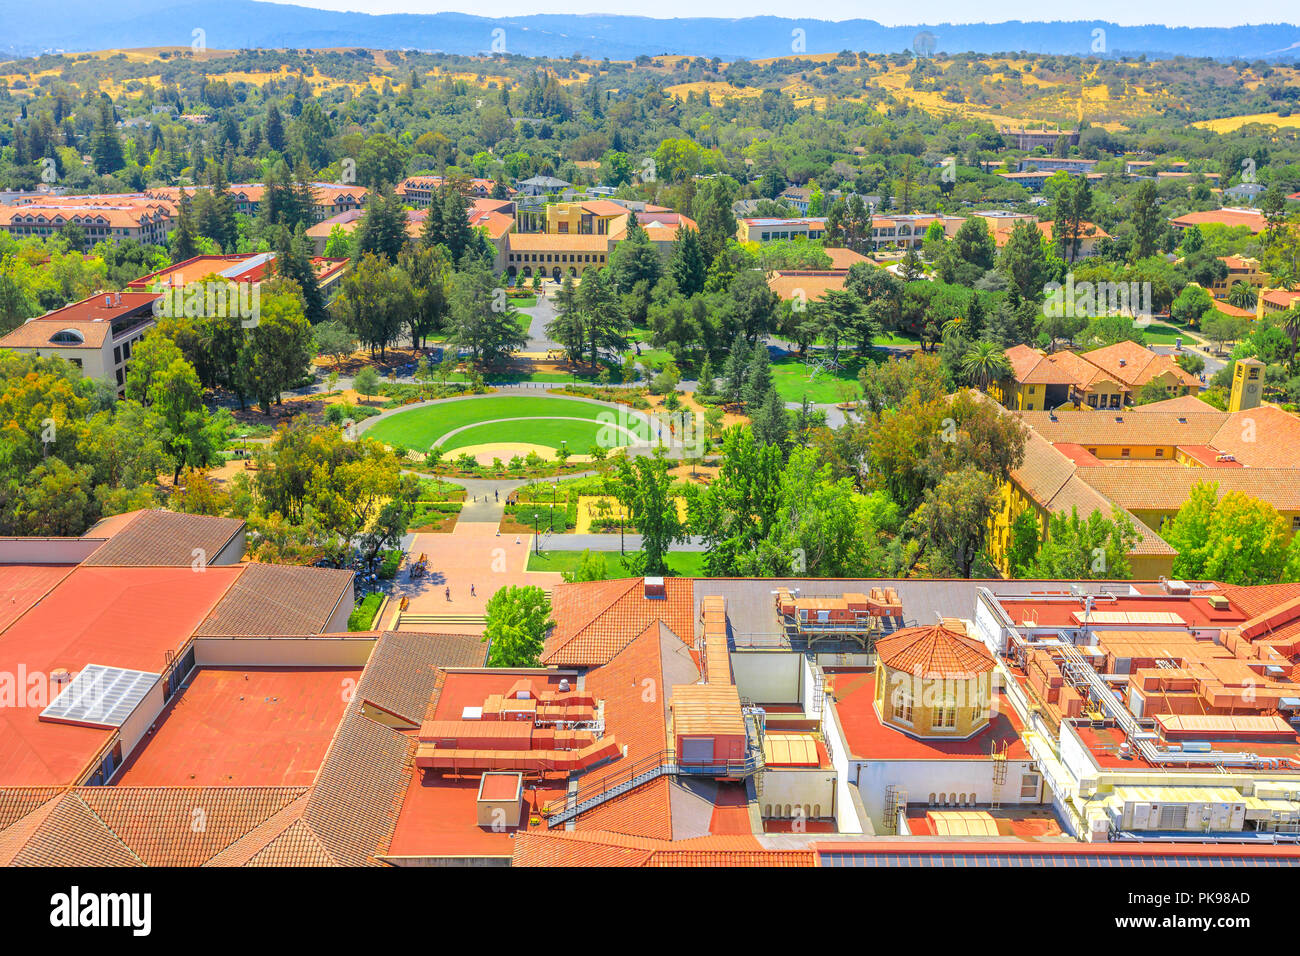 Palo Alto, Kalifornien, USA - 13. August 2018: Luftbild von der Stanford University Campus von Hoover Tower Observatorium gesehen. Stanford ist einer der renommiertesten Universitäten der Welt. Stockfoto